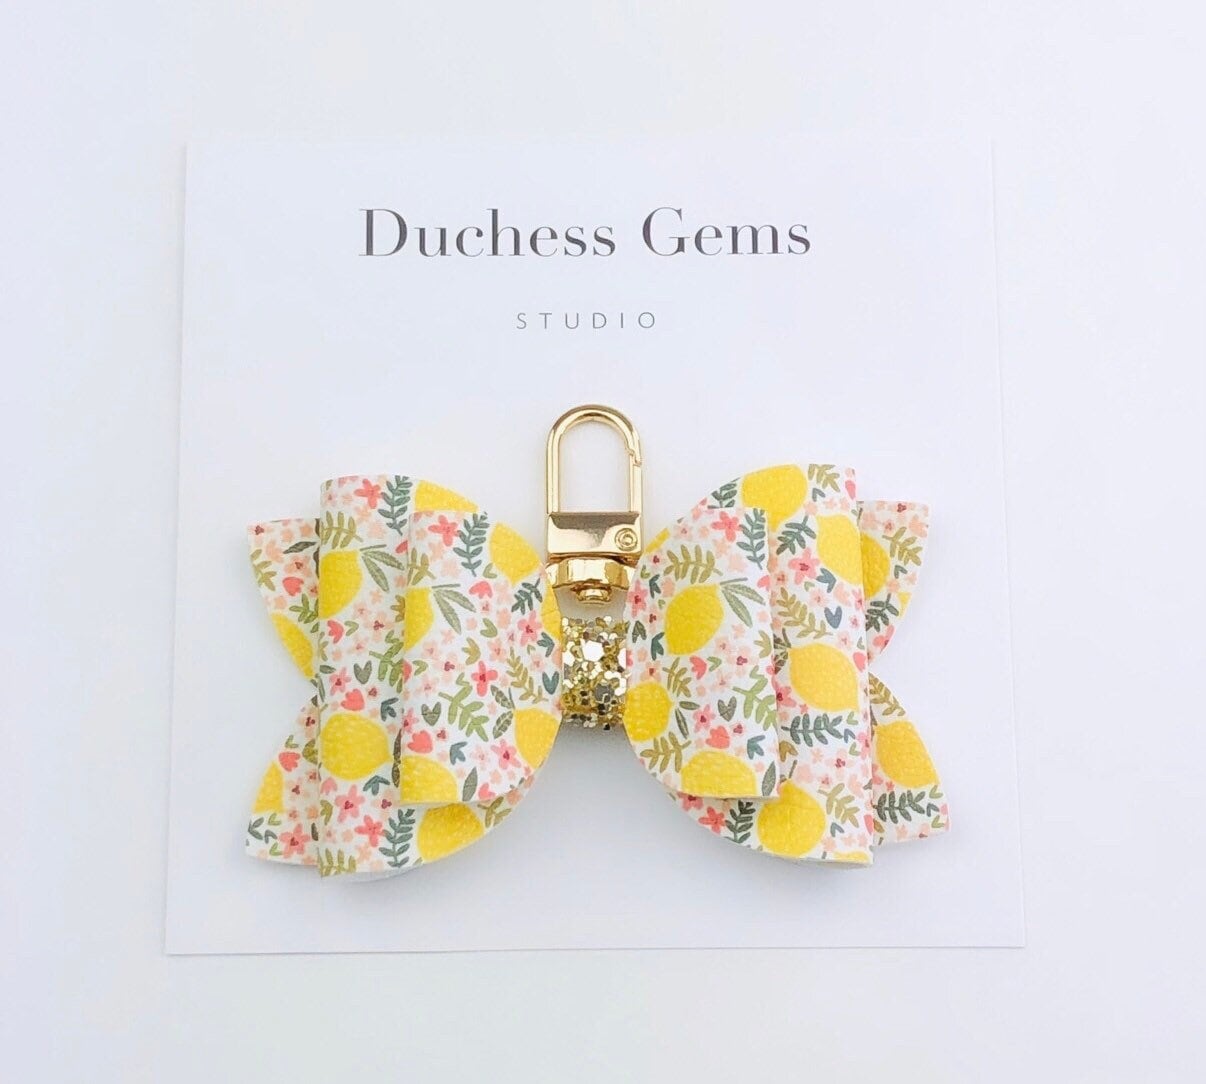 Zitronen Kunstleder Schleife Tasche Charm, Citrus Muster Schlüsselring von DuchessGemsStudio